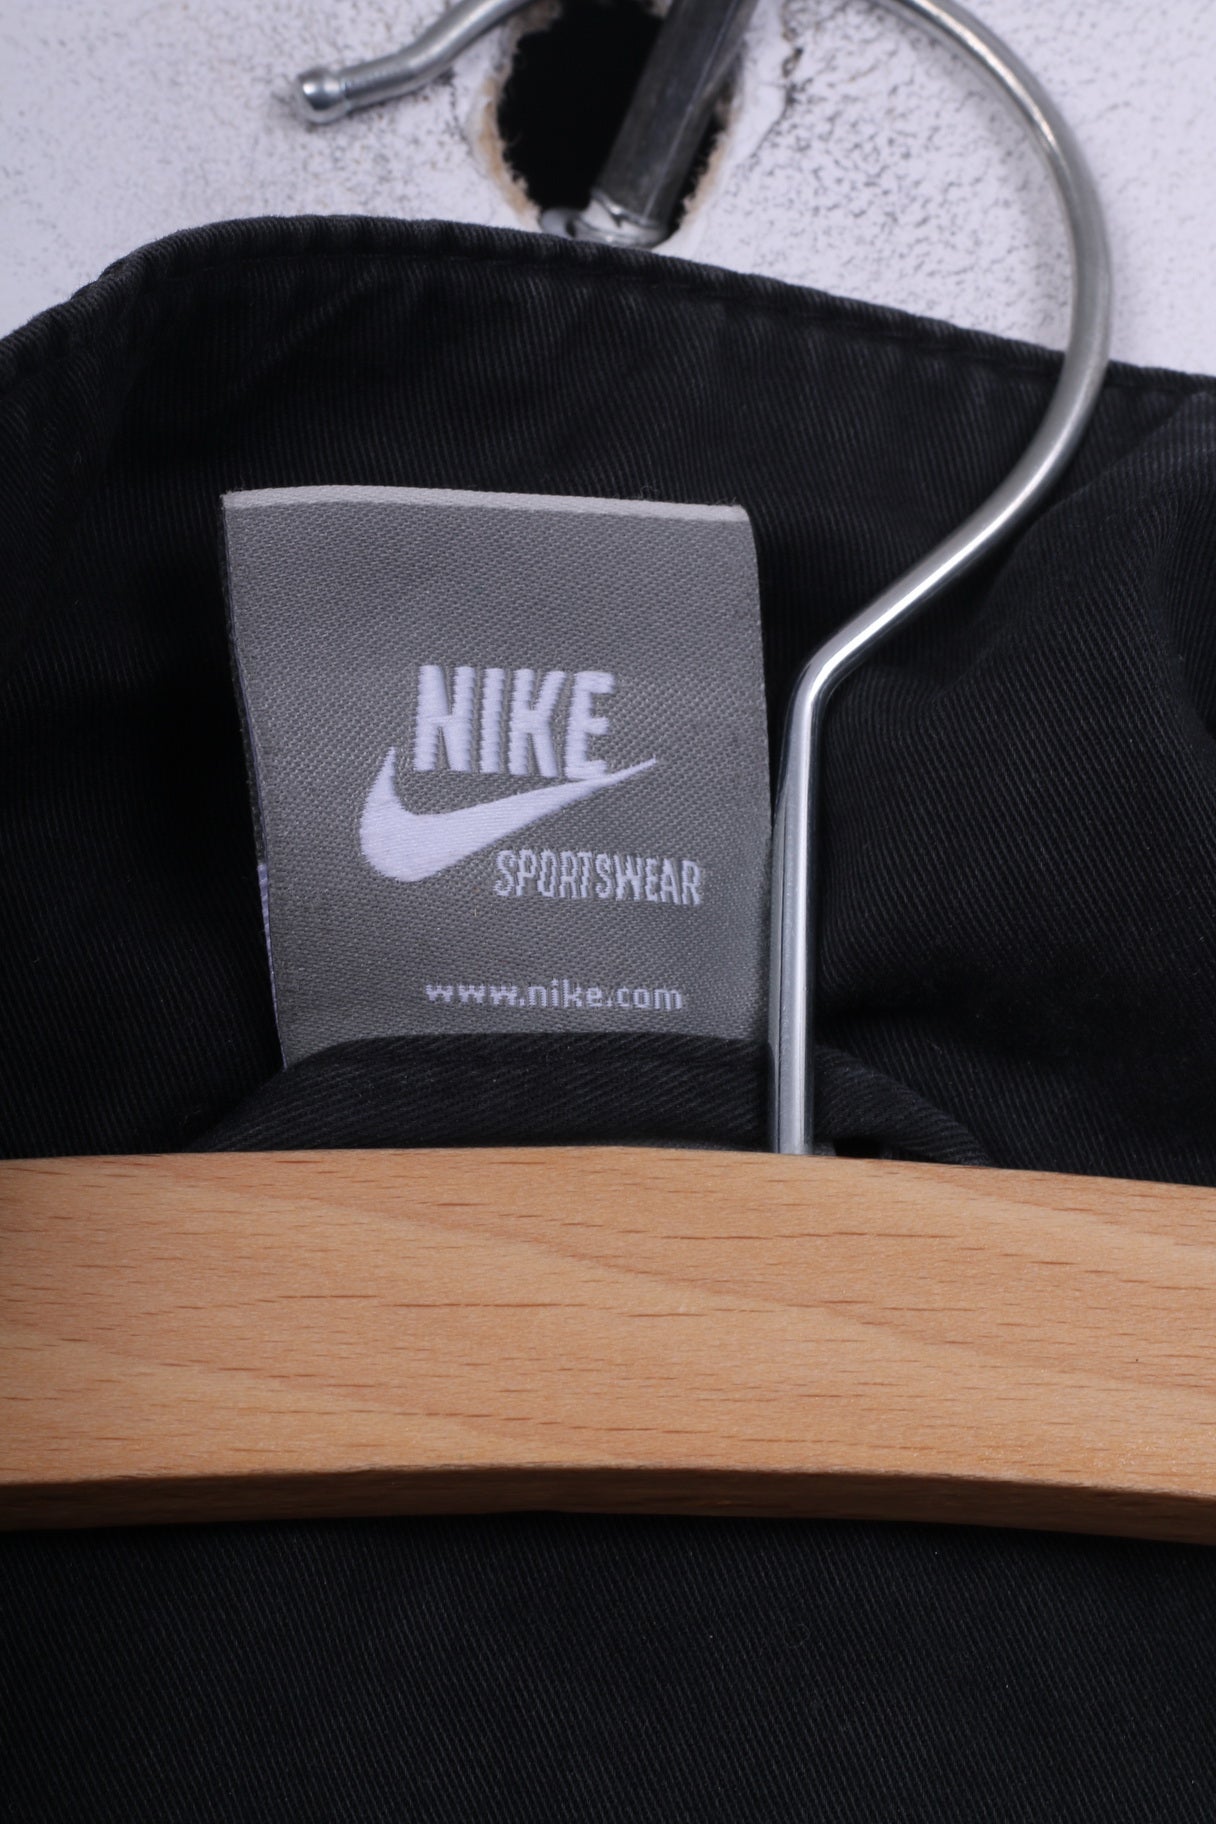 Nike Sportswear Womens L 14/16 Jacket Black Cotton Full Zipper Pocket